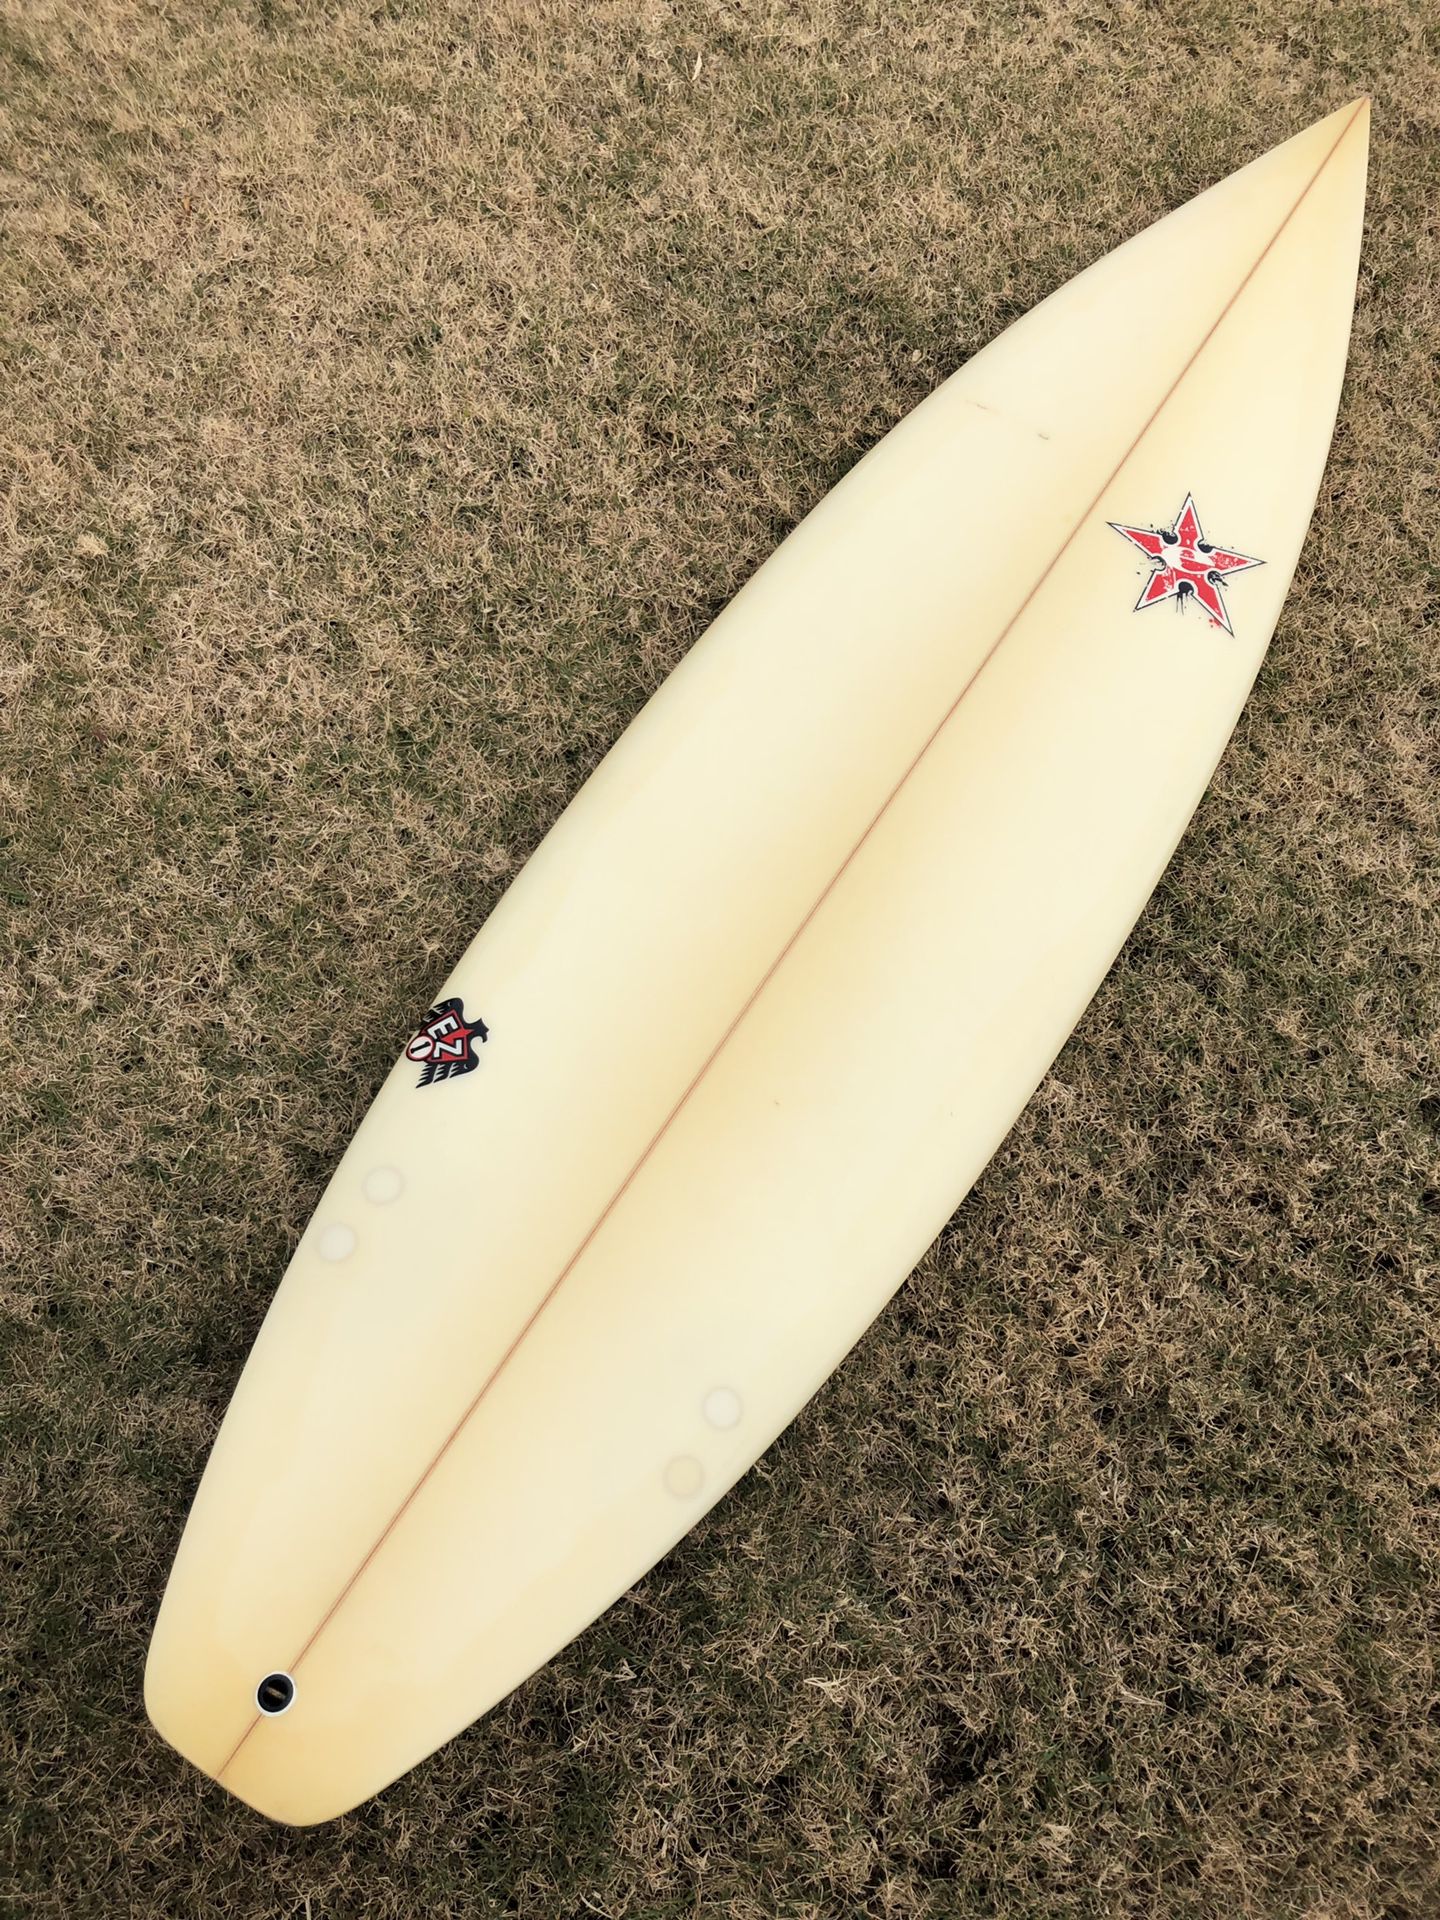 Boyson Axe Surfboard 6’ 0” Very Good Condition!